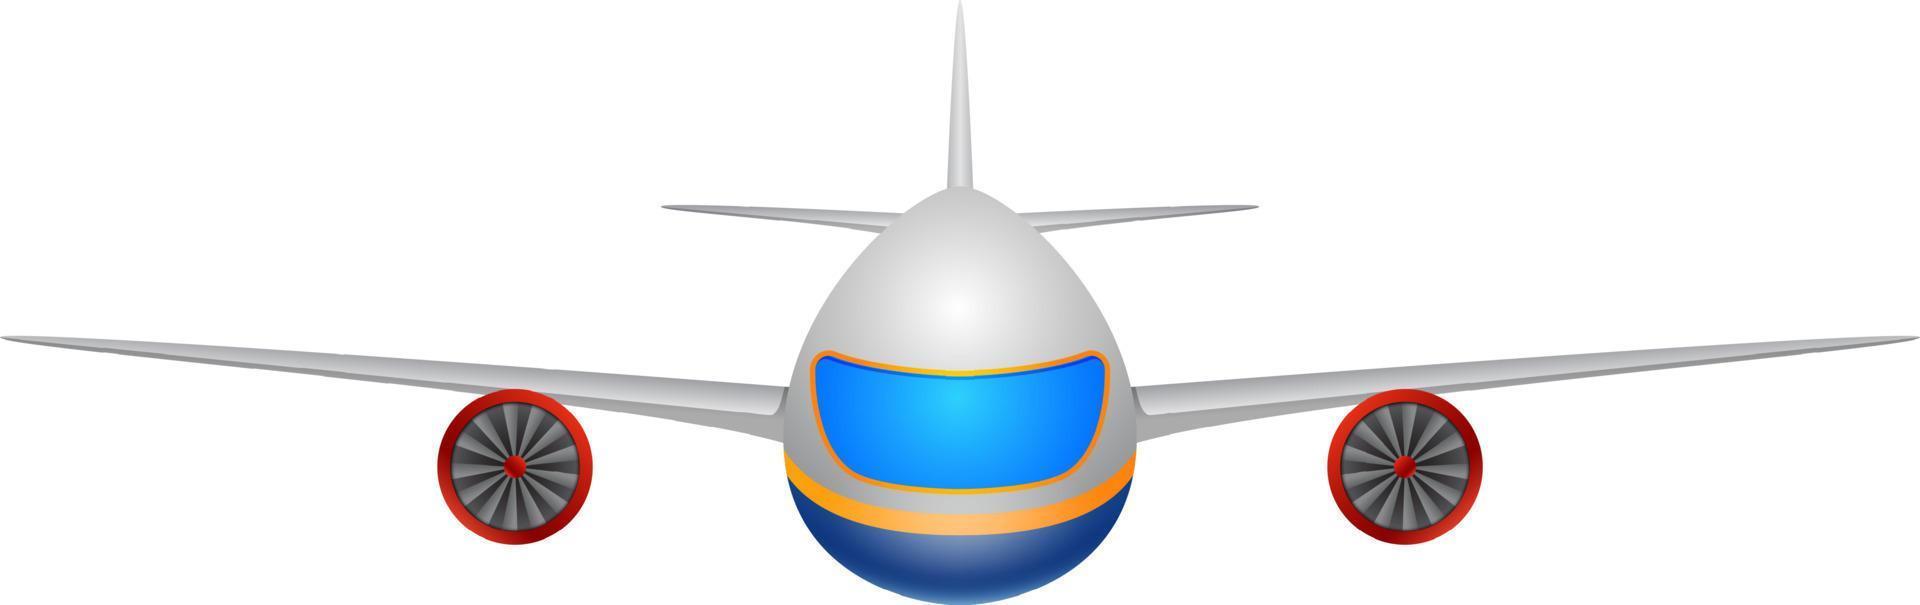 ilustração de uma vista frontal de um avião em um fundo branco vetor